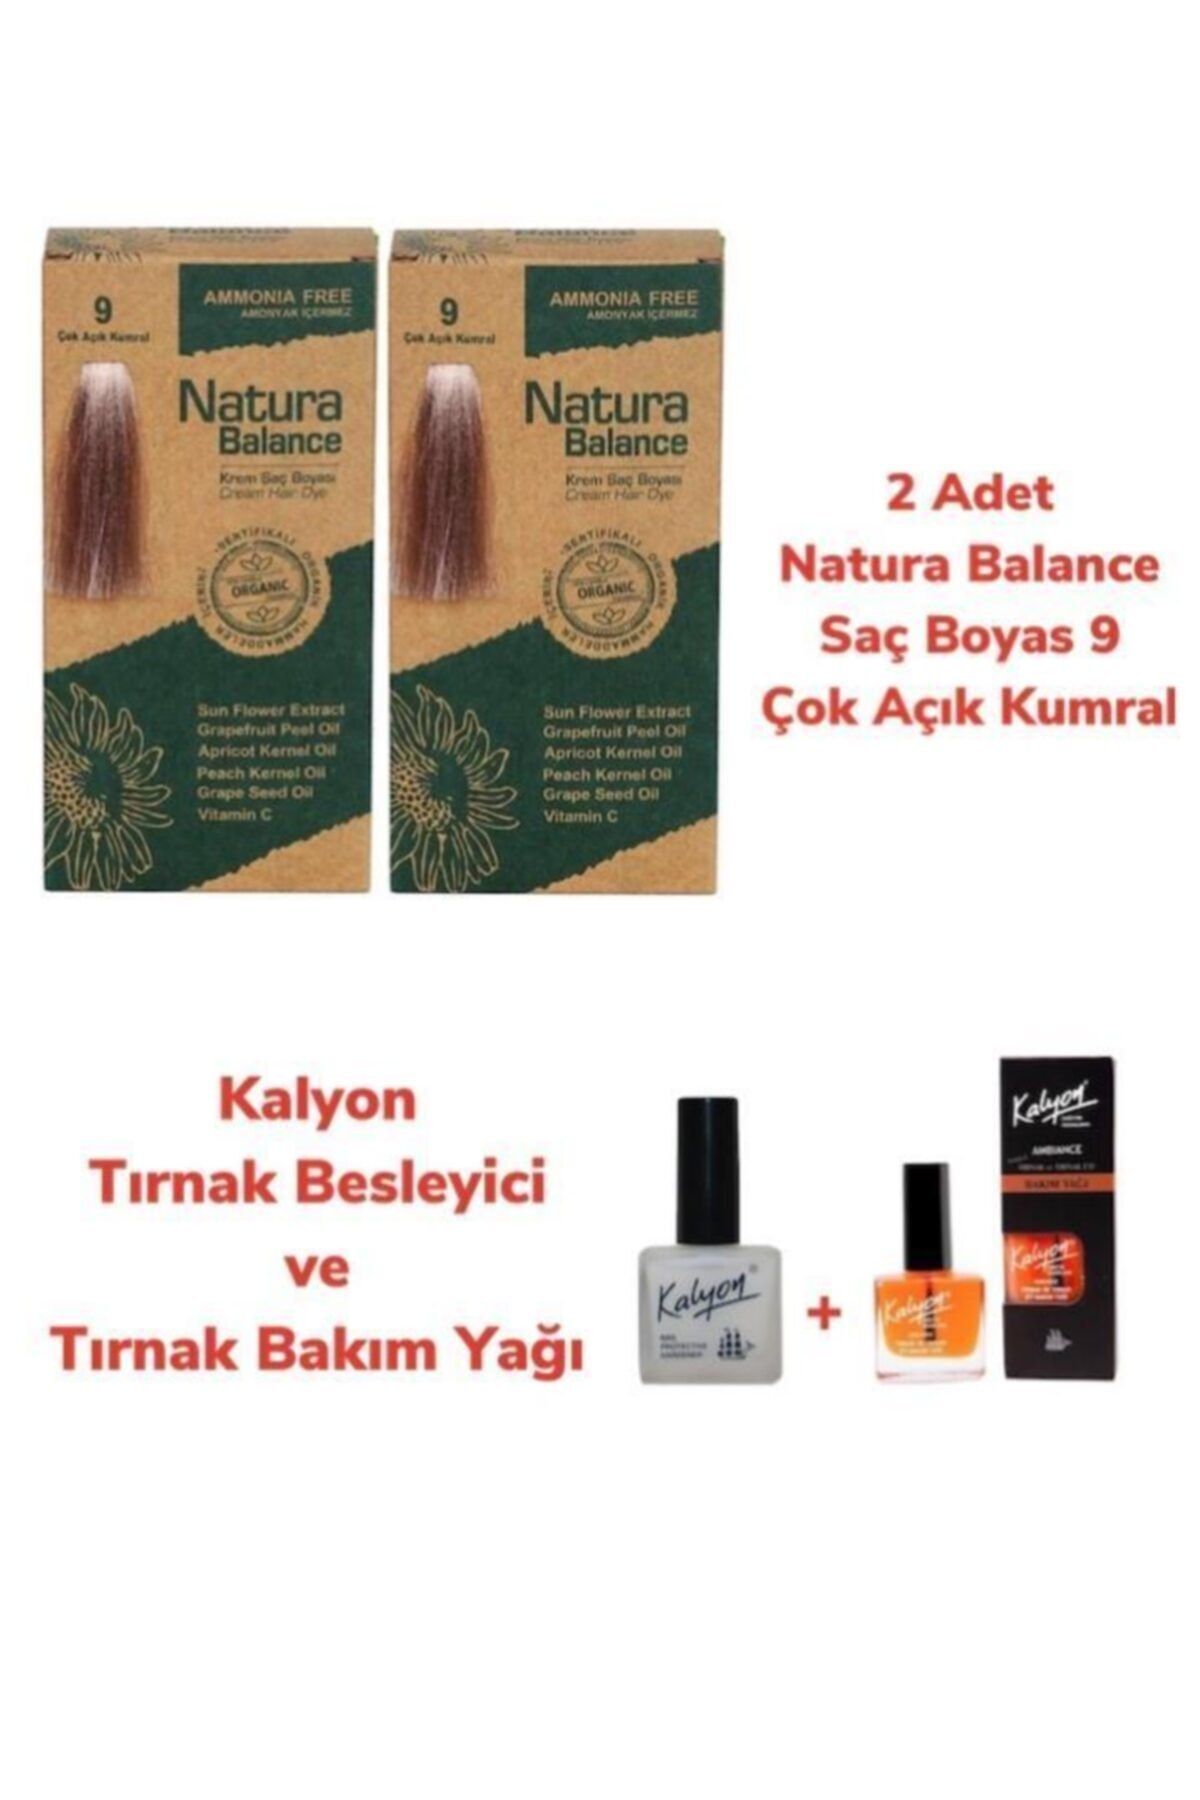 Natura Balance Saç Boyası 9 Çok Açık Kumral Bakır 2 Adet + Kalyon Tırnak Besleyici Ve Bakım Yağı